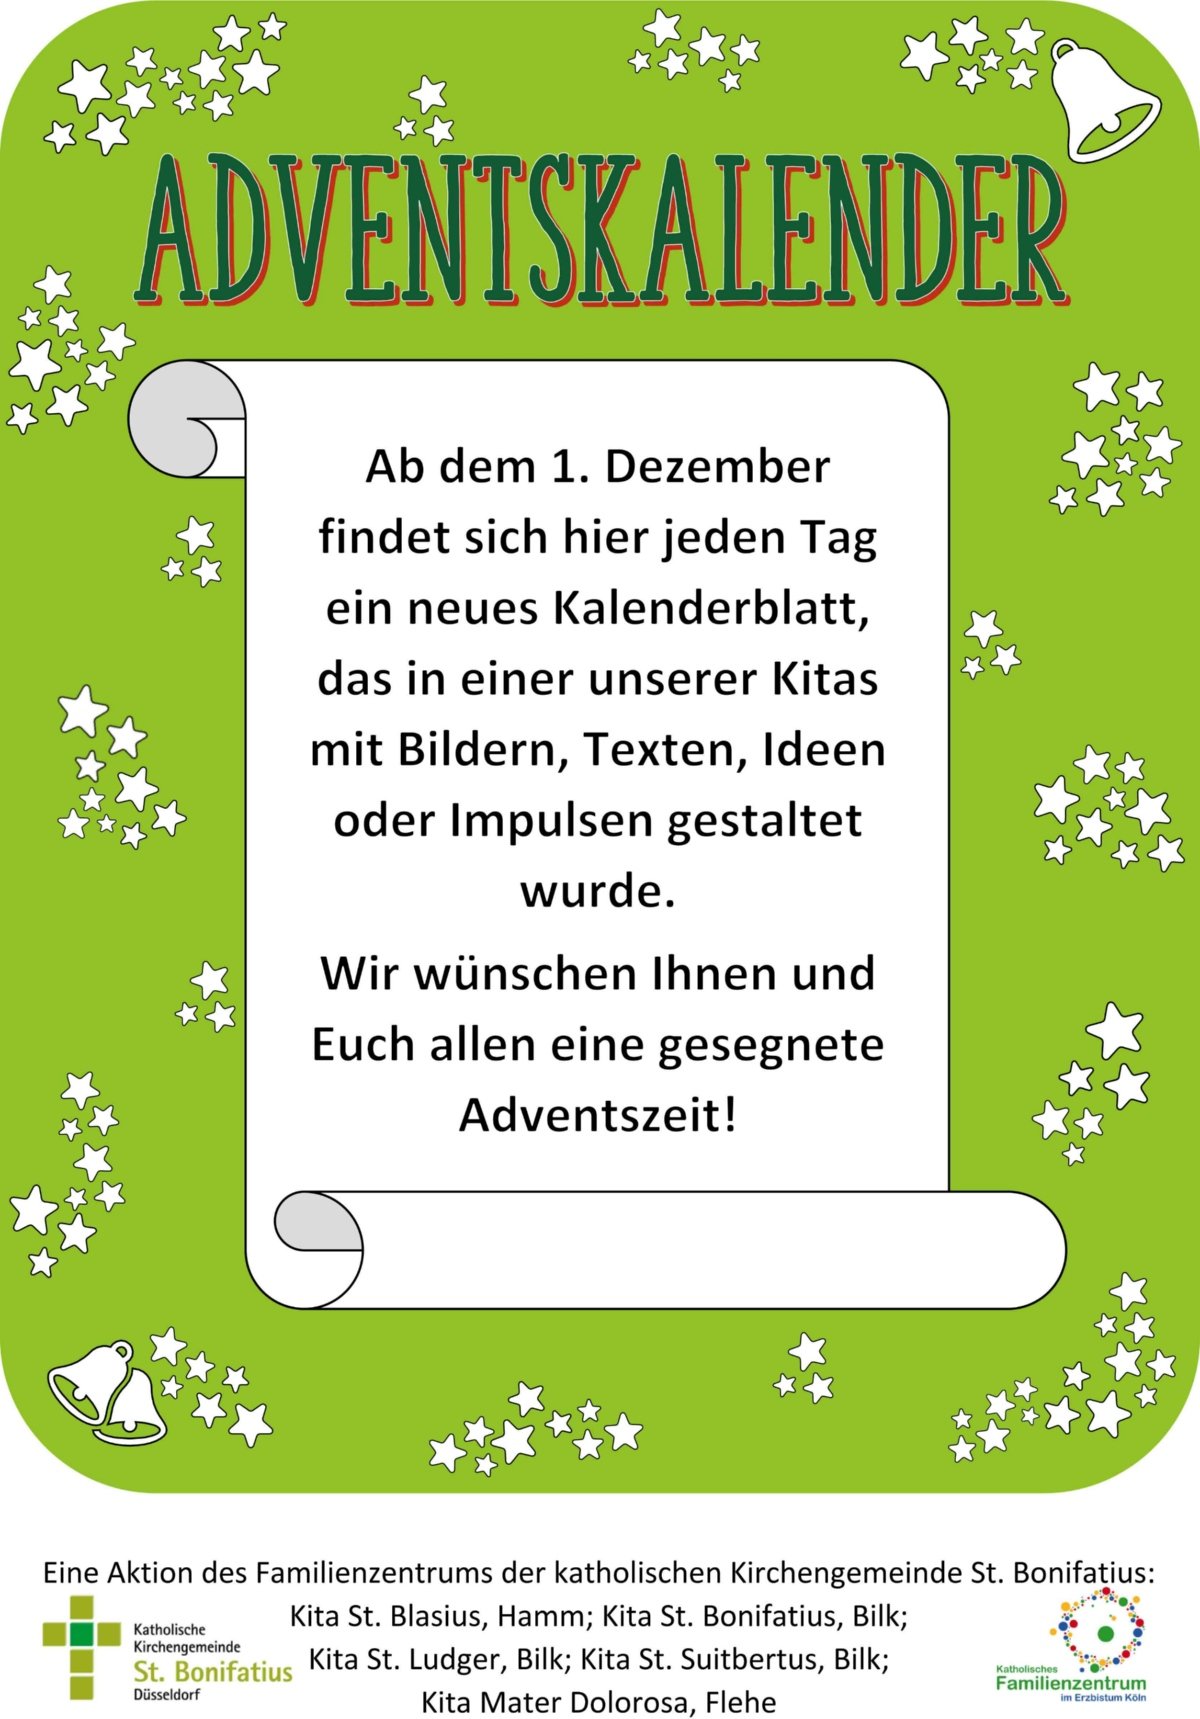 Ab dem 1. Dezember 2020 findet sich hier jeden Tag ein neues Kalenderblatt, das in einer der KiTas der kat. Kirhcengemeinde St. Bonifaitus in Düsseldorf gestaltet wurde. (c) KiTas der kath. Kirchengemeinde St. Bonifaitus Düsseldorf